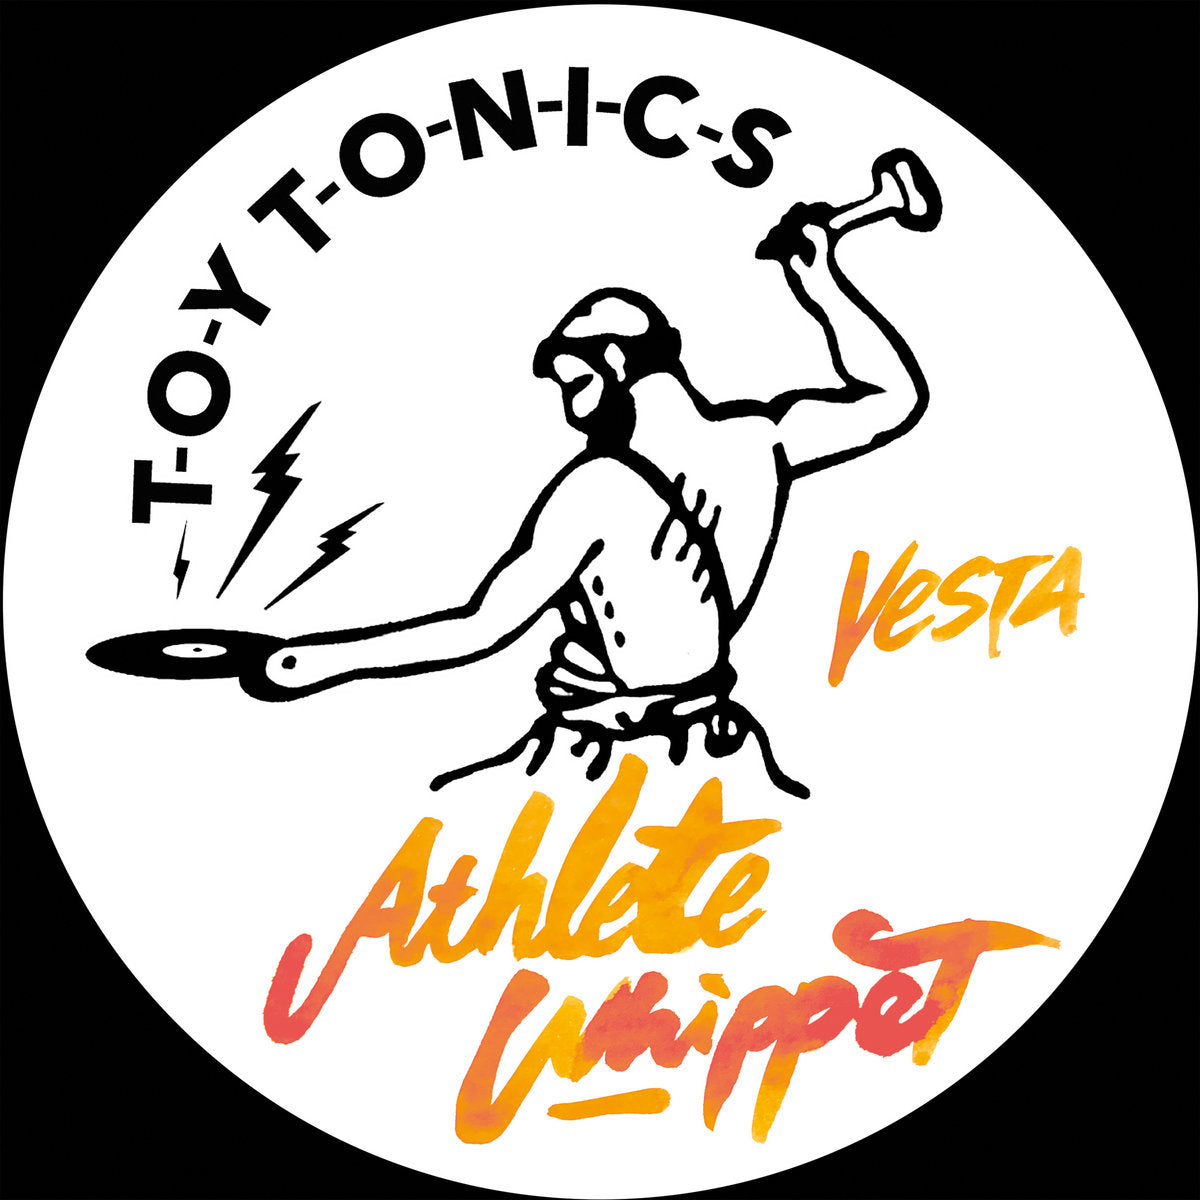 Athlete Whippet - Vesta (12" Vinyl)